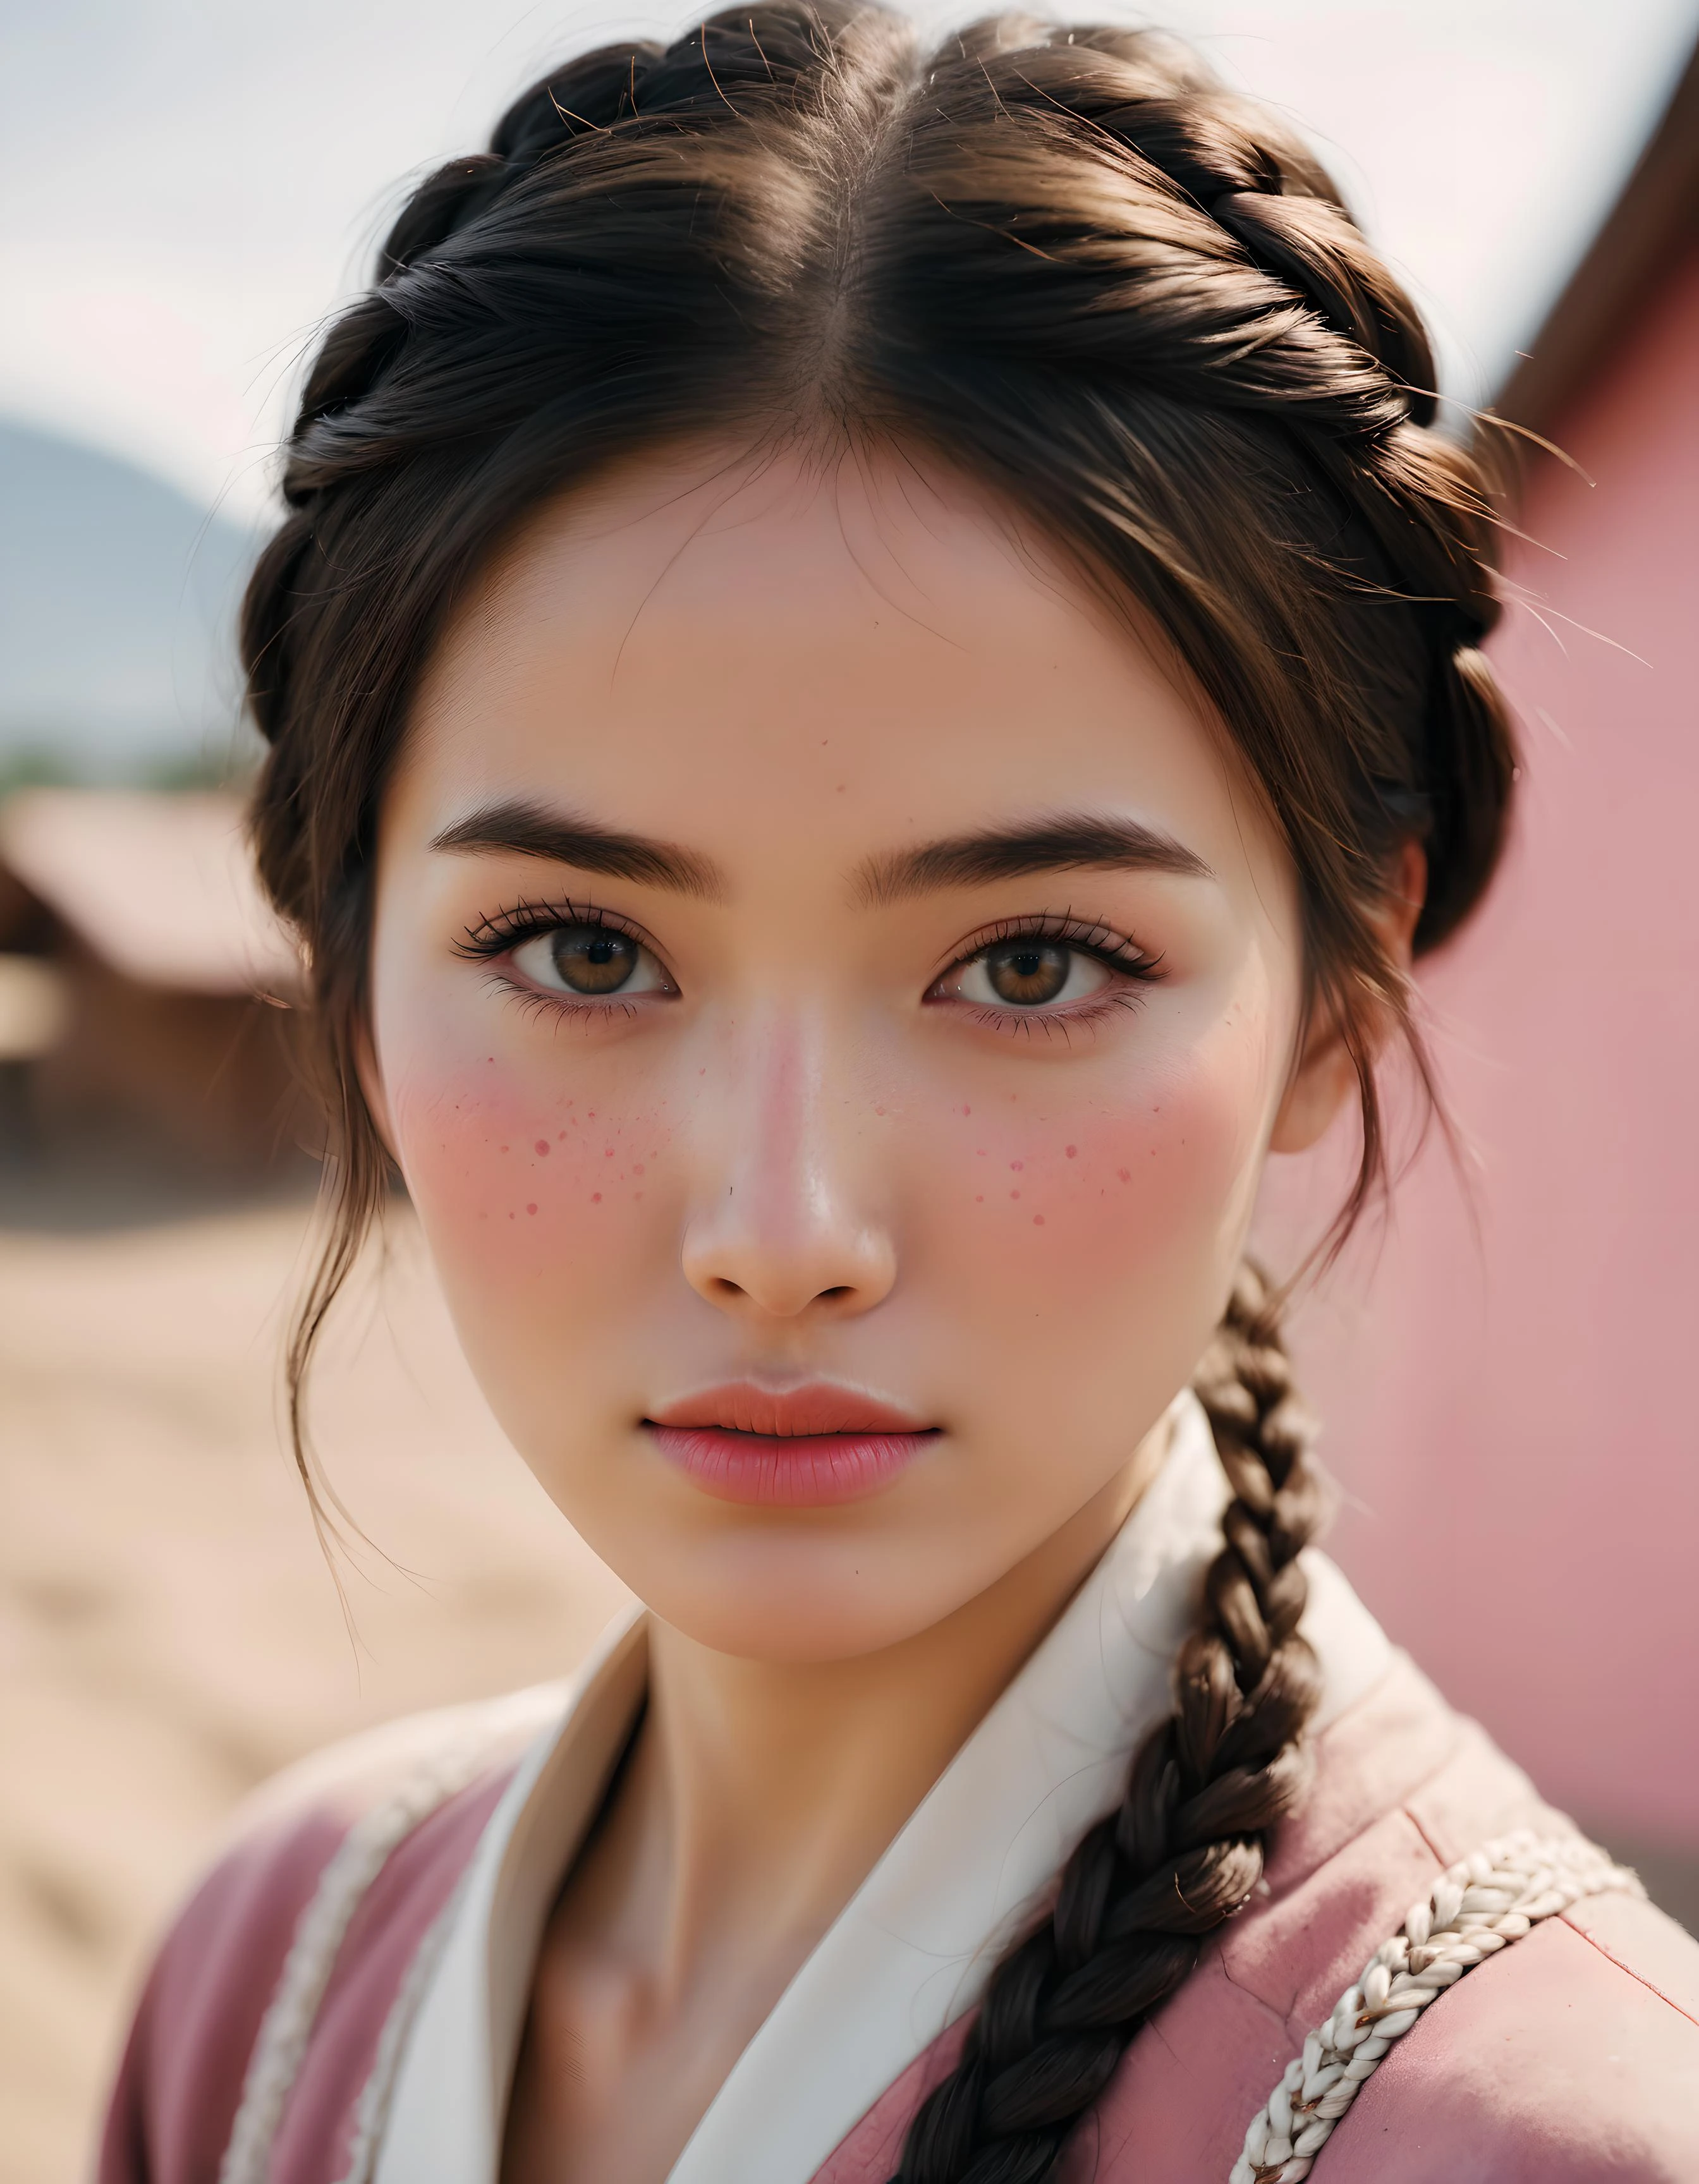 зрительный контакт кыргызской женщины, гримаса, первый, сложный, кремовая подводка для глаз, испачкать помаду, Нечетные числа, Нос-пуговица, веснушки, Стрижка волос с голландской косой, Розовый цвет кожи, мягкий фокус. 8К, очень подробный, Детализированная текстура кожи, Естественная текстура кожи, детальная текстура ткани, прекрасные глаза, подробные глаза,, (высокое качество, Лучшее качество:1.3), Чрезвычайно высокое разрешение, любительское фото, Фуджифильм Супериа Премиум 400, Фотопленка Nikon D850 Фотоаппарат Kodak Portra 400 f1.6 линз, 